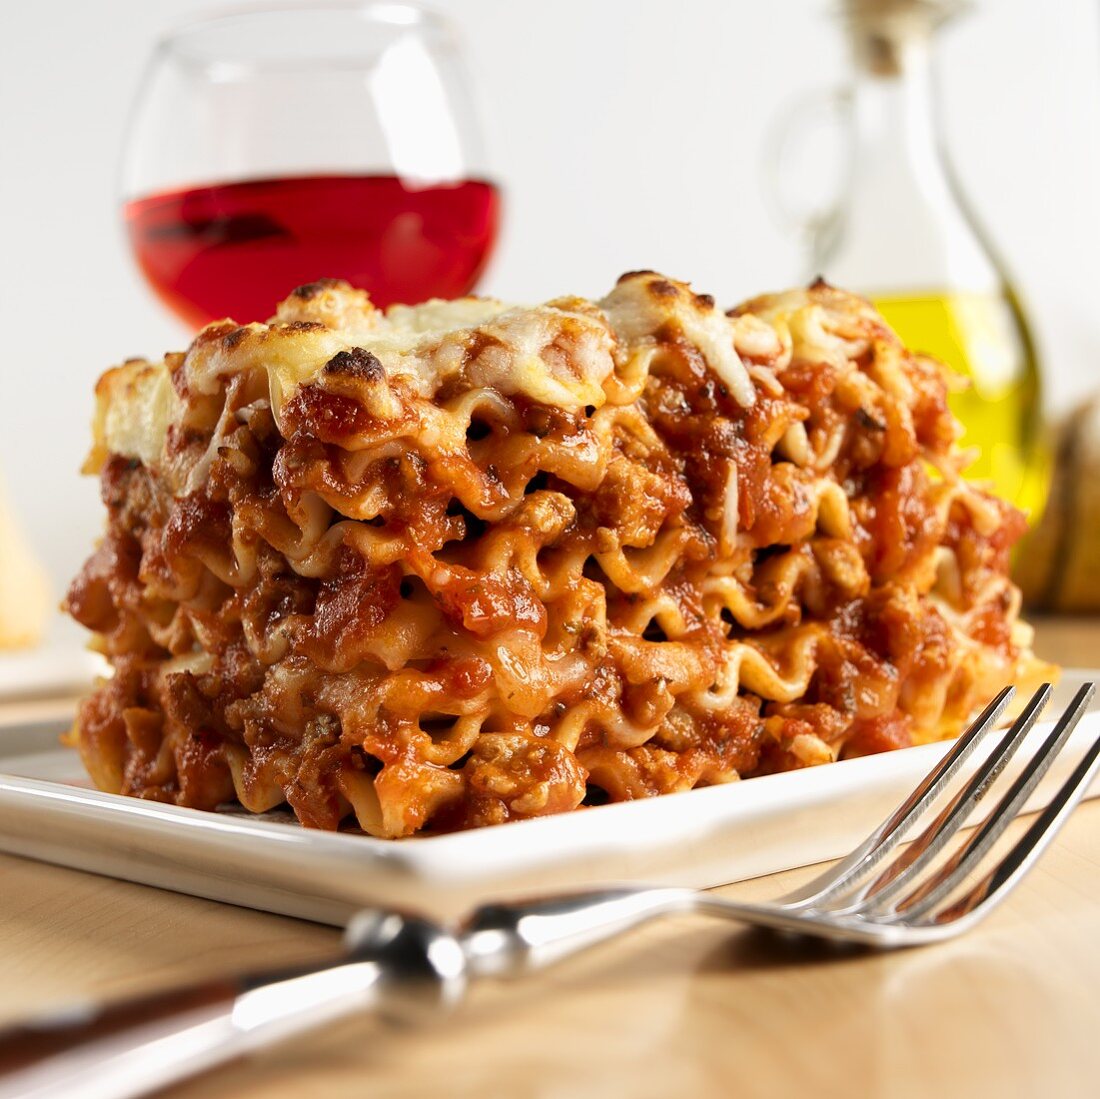 Lasagne al forno (Nudelauflauf mit Bechame- & Fleischsauce)